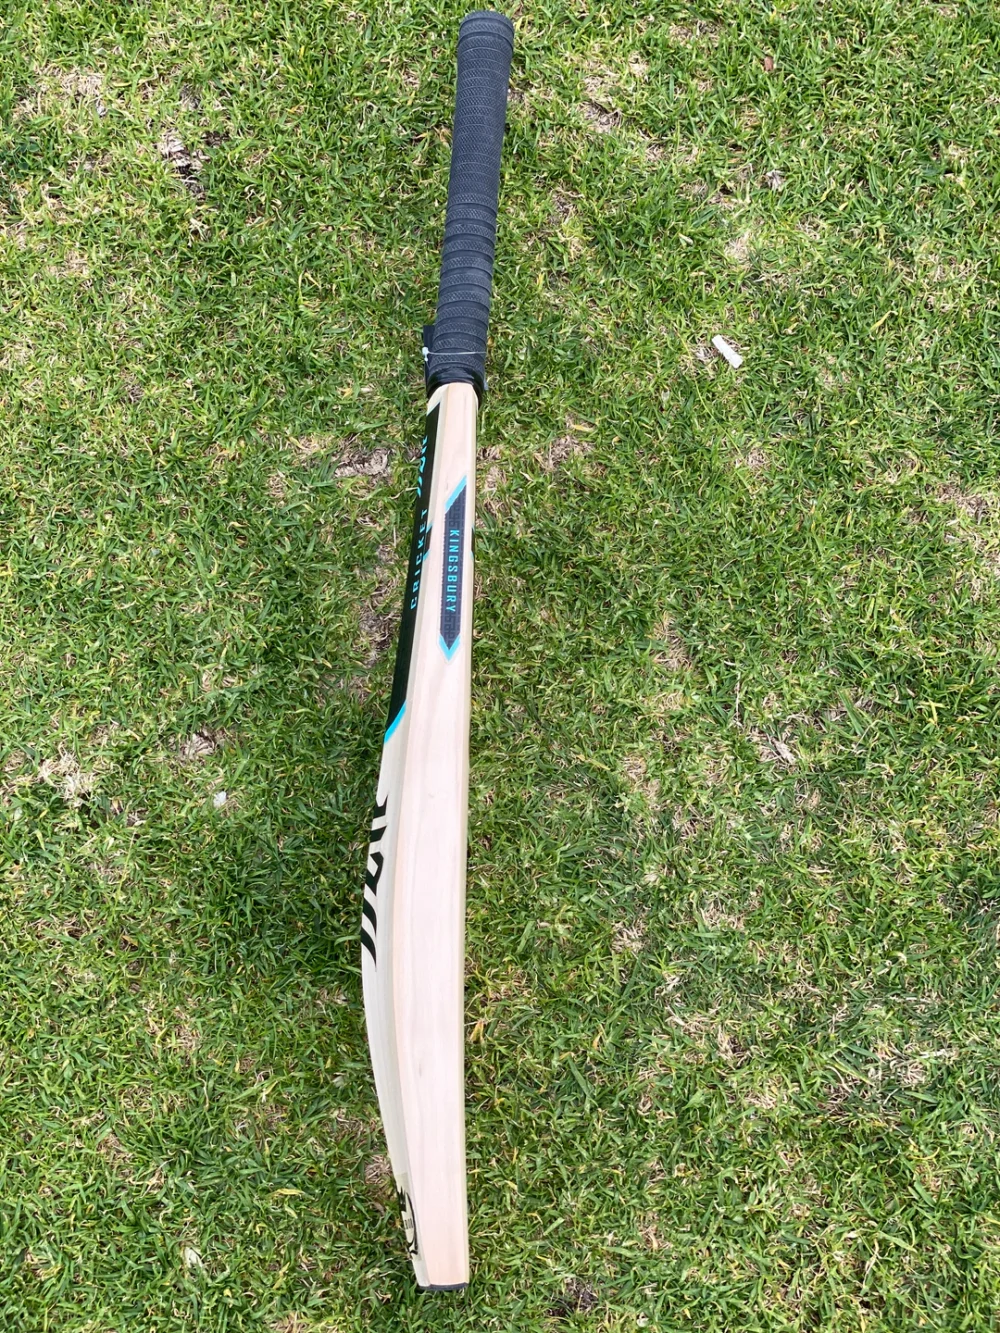 Kingsbury Emperor cricket bat